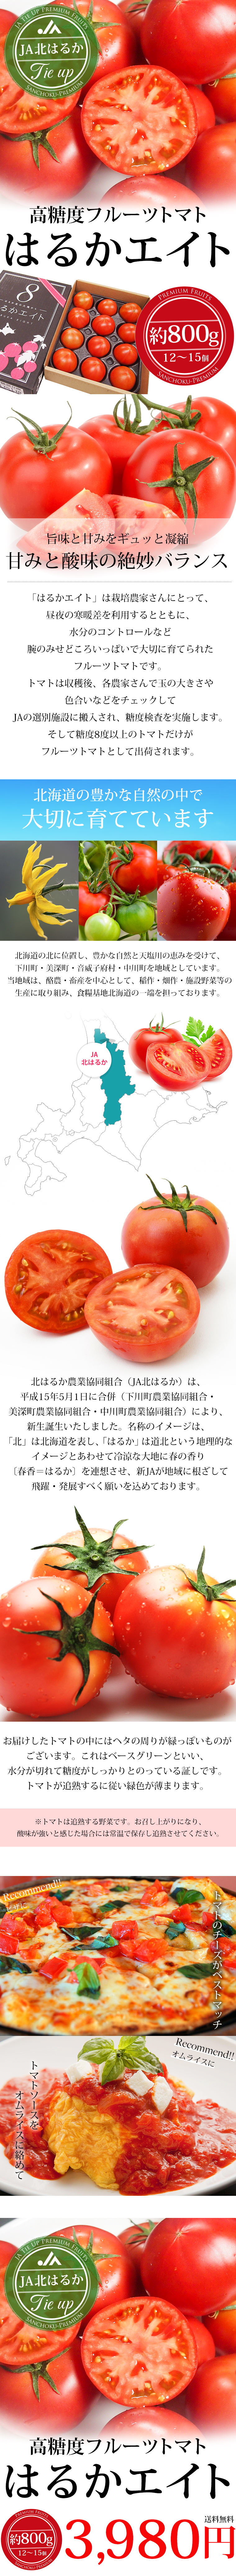 フルーツトマト 北海道産 はるかエイト 約800g 12〜15個